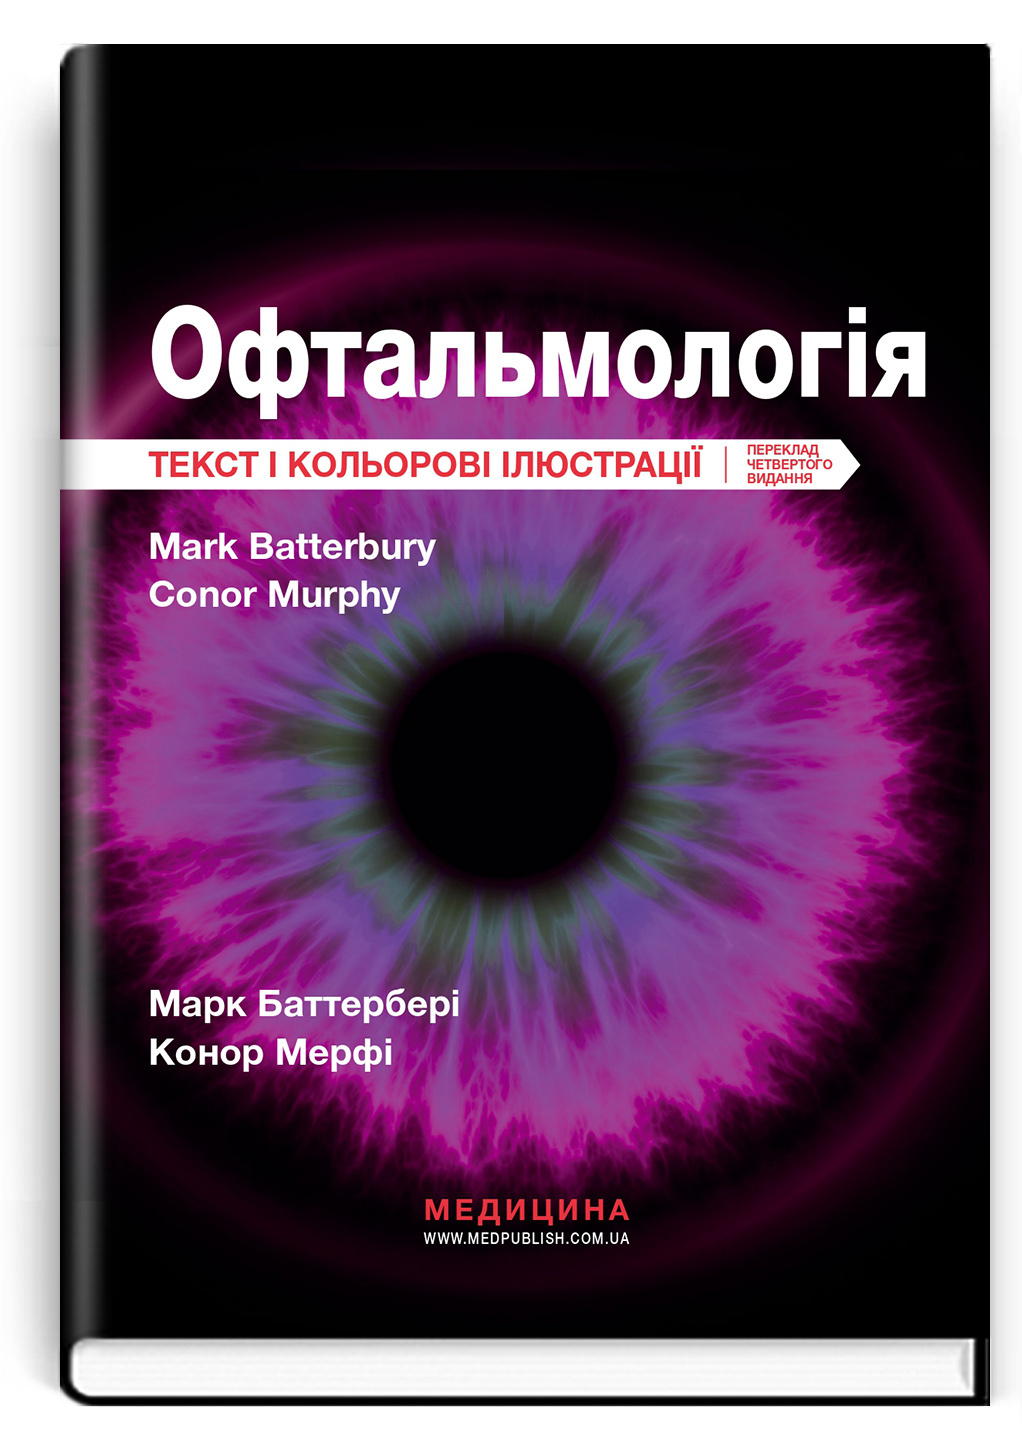 Офтальмологія: текст і кольорові ілюстрації: 4-е видання